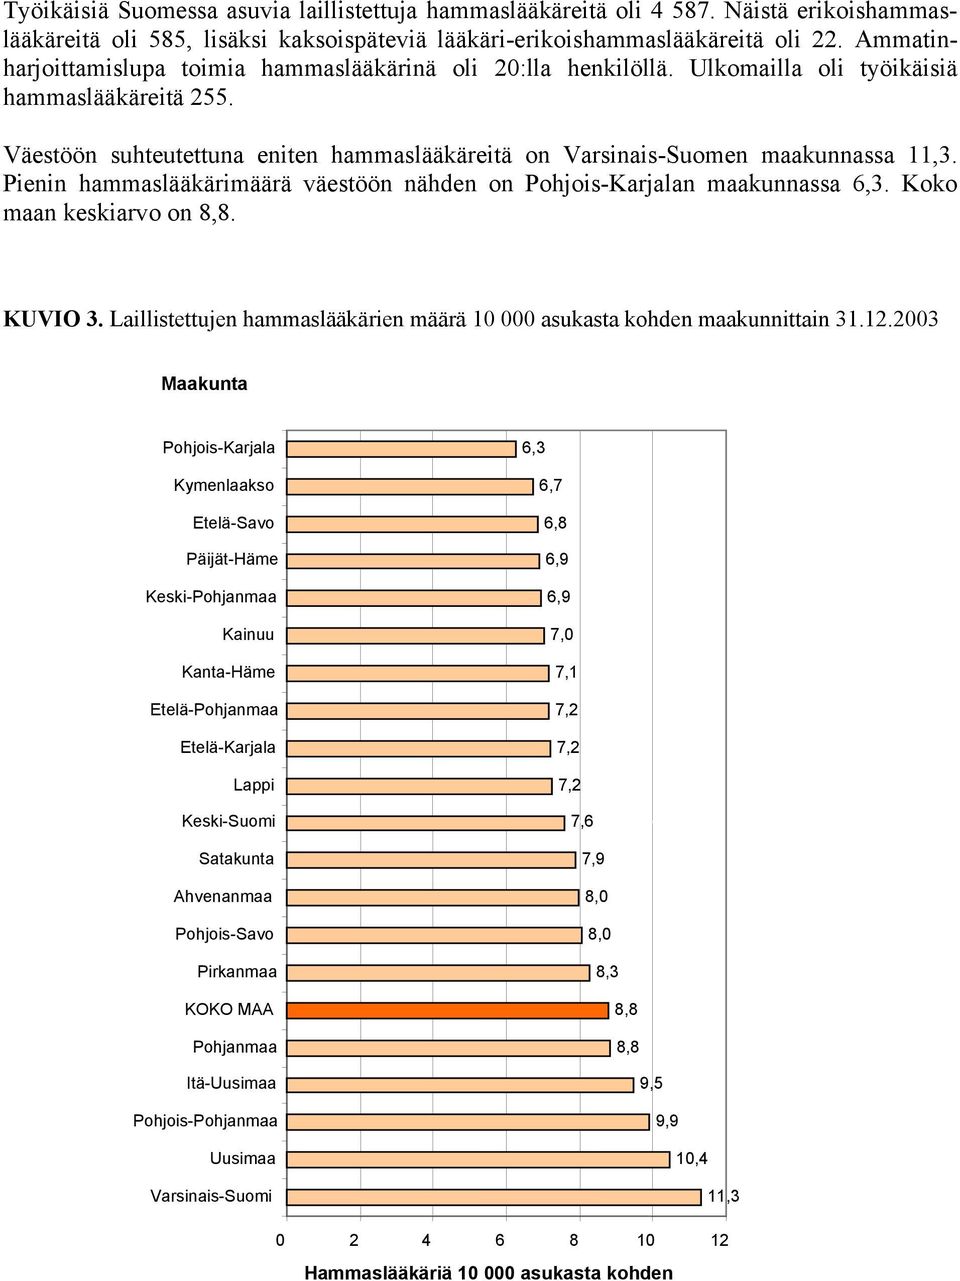 Väestöön suhteutettuna eniten hammaslääkäreitä on Varsinais-Suomen maakunnassa 11,3. Pienin hammaslääkärimäärä väestöön nähden on Pohjois-Karjalan maakunnassa 6,3. Koko maan keskiarvo on 8,8. KUVIO 3.